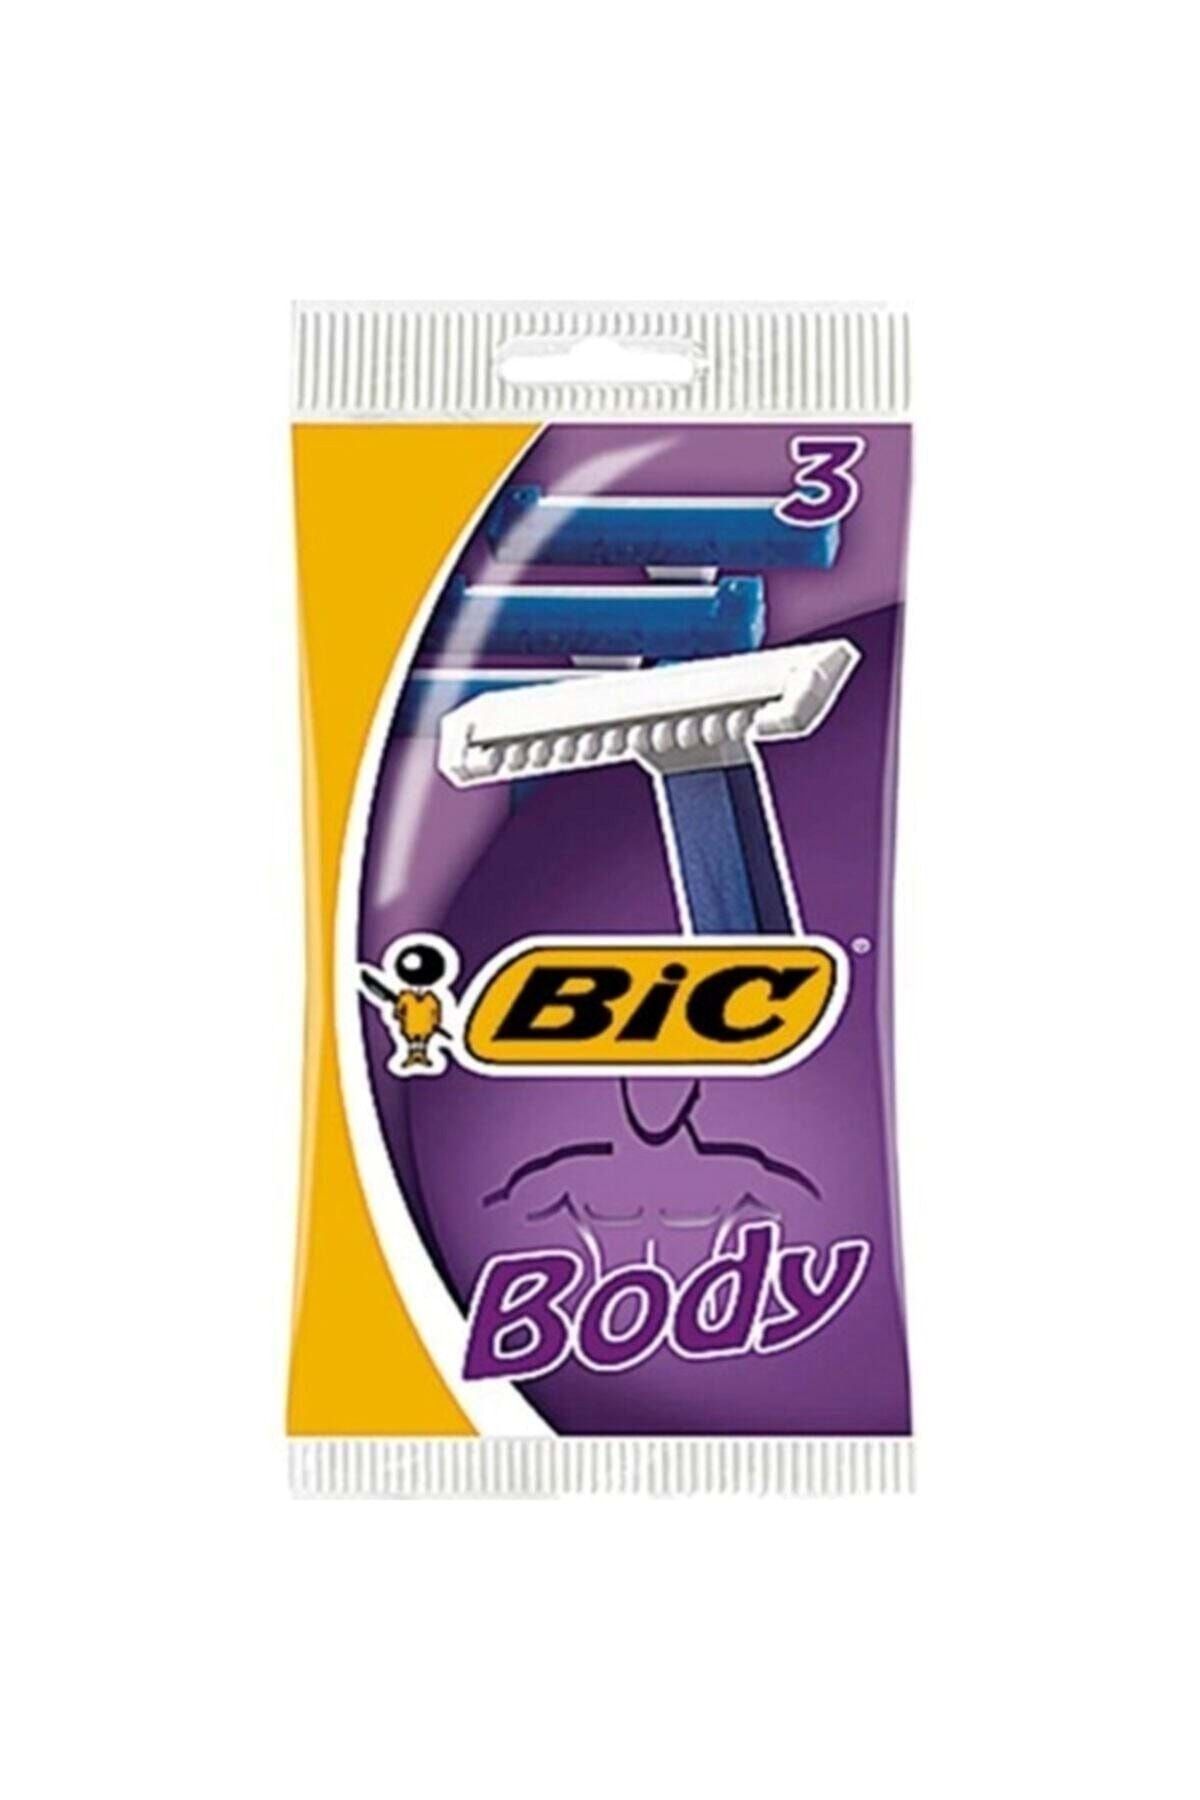 Bic Banyo Body Tıraş Bıçağı 3'lü Poşet